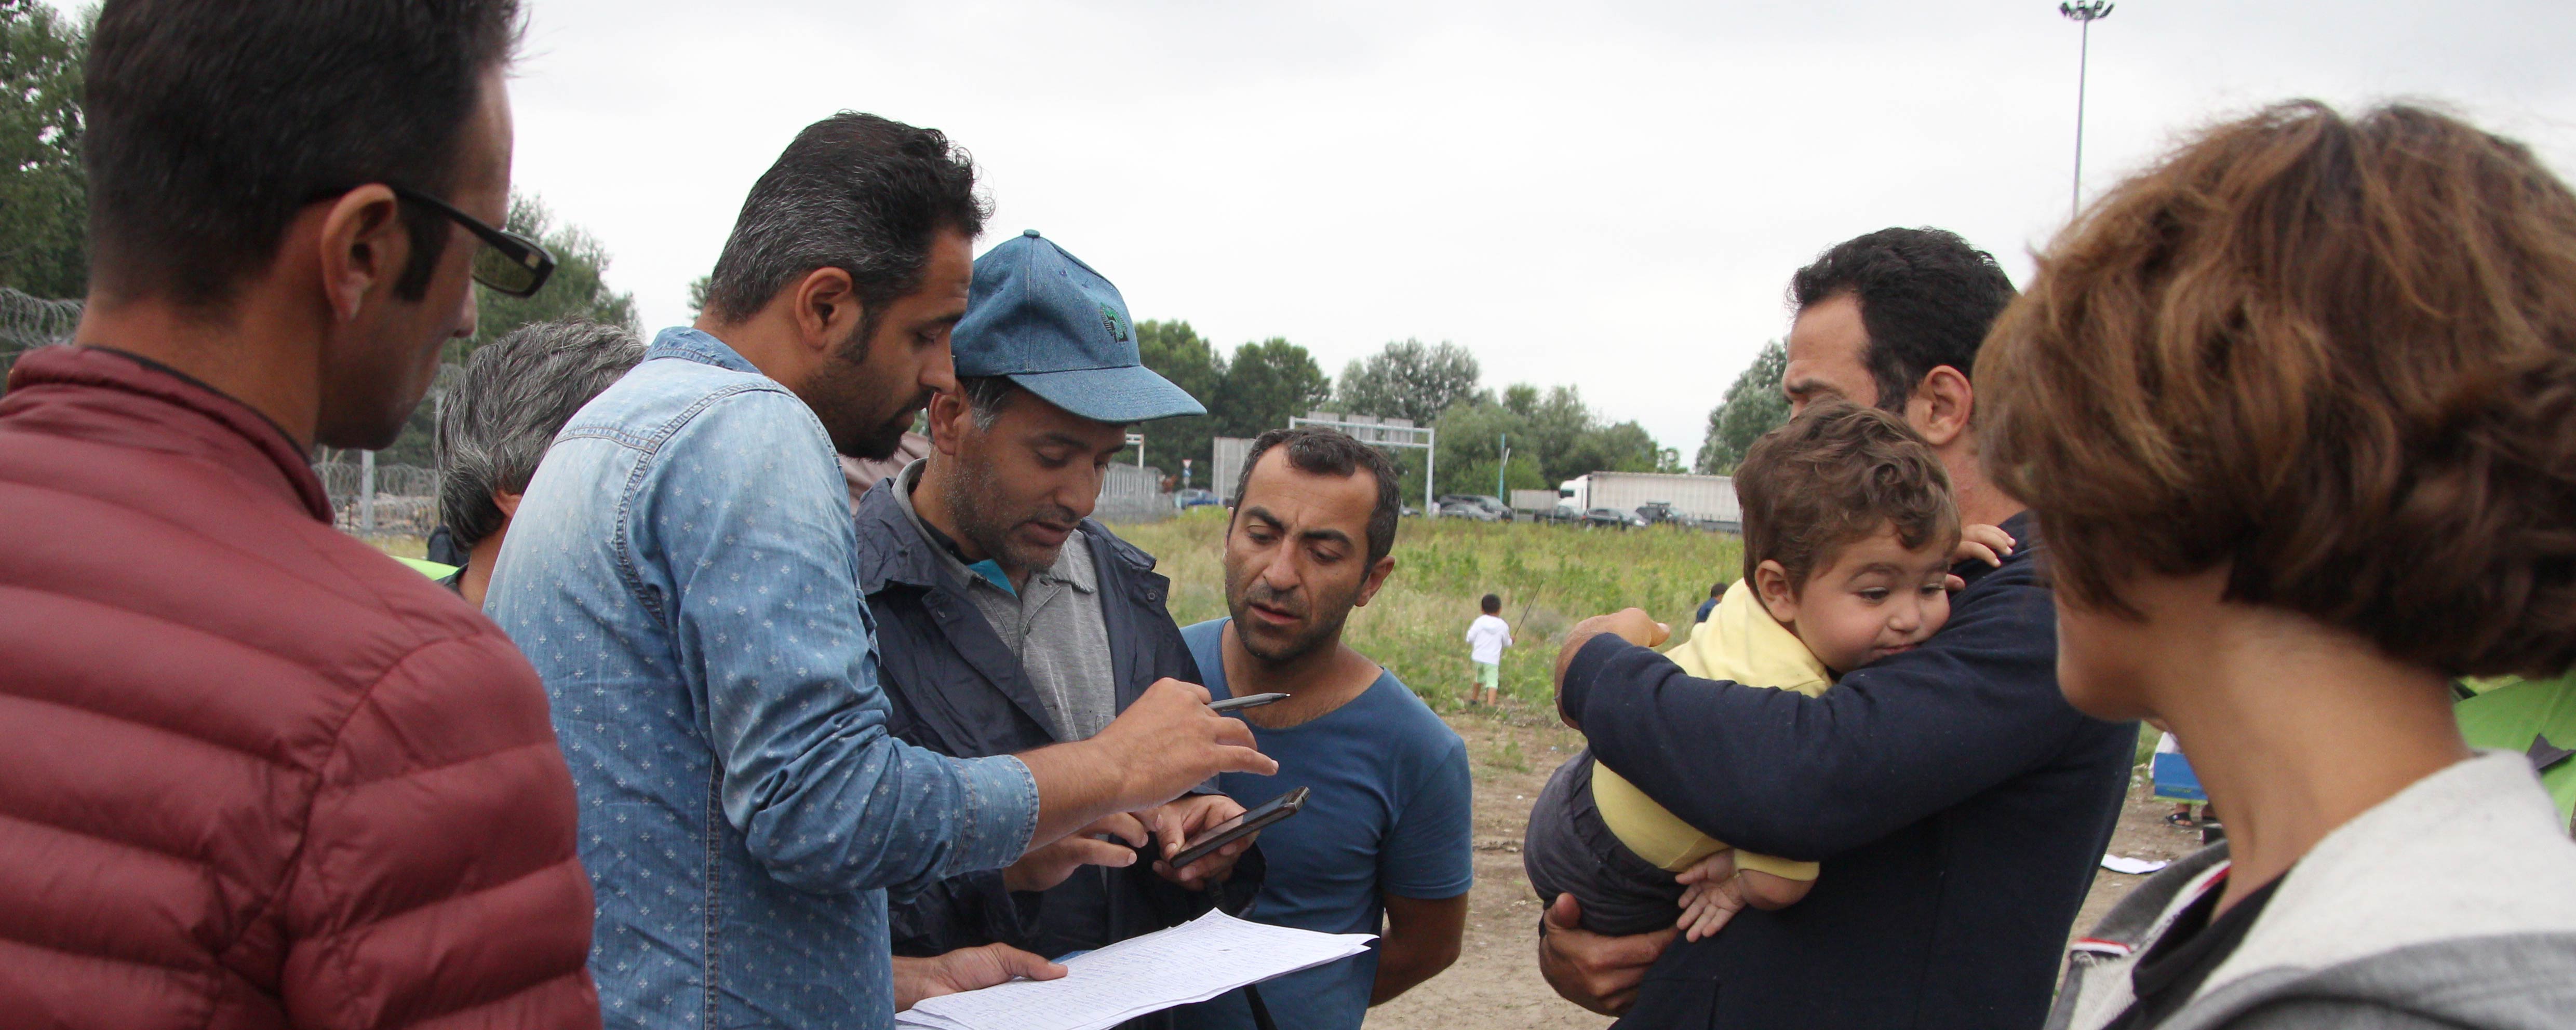 Az UNHCR a menekült válság kapcsán irányváltásra sürgeti Európát